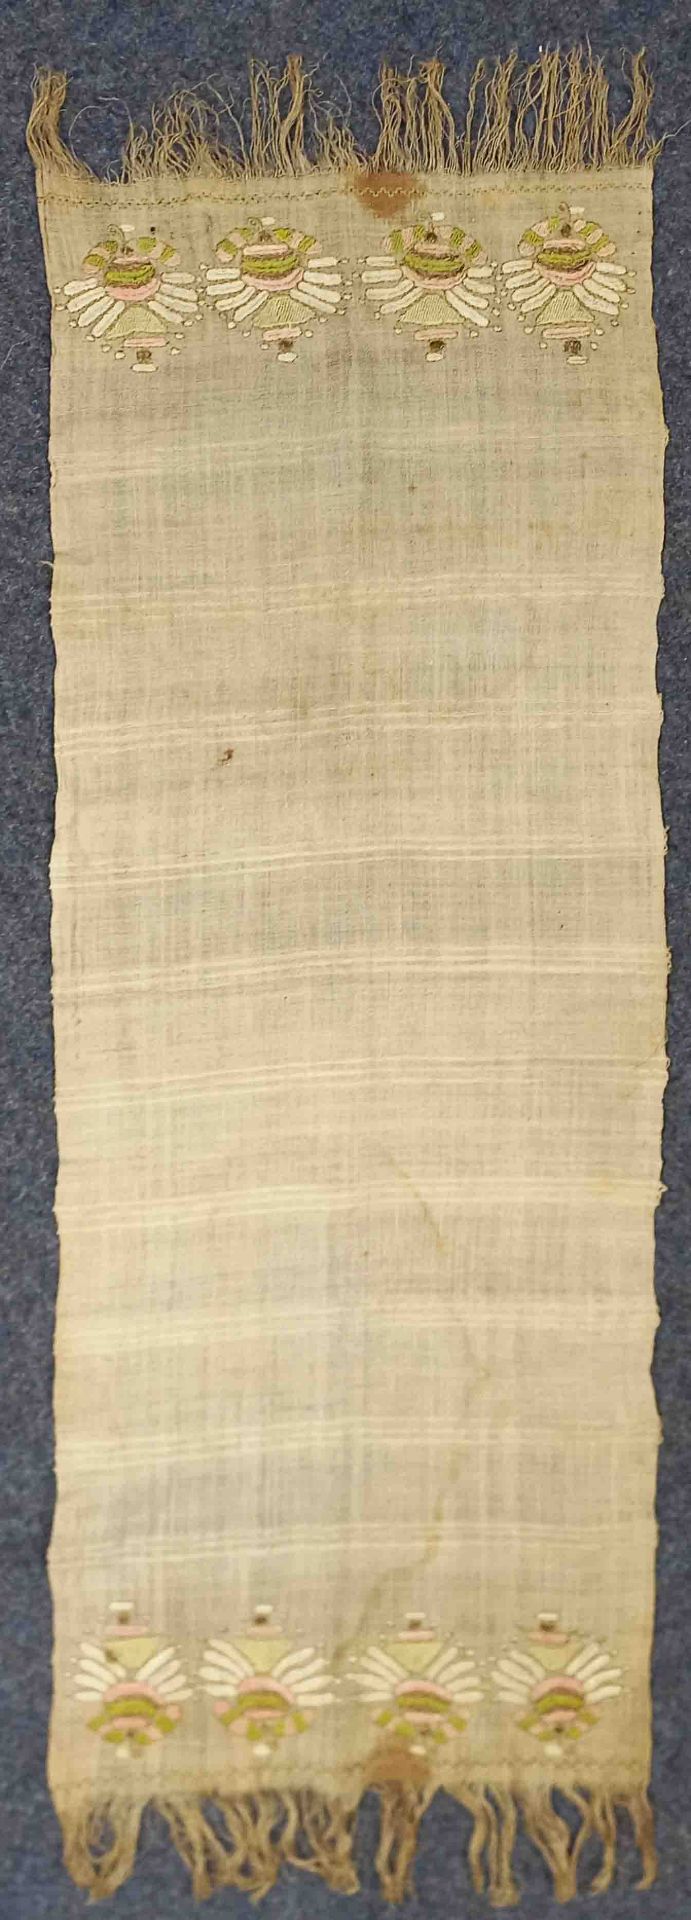 3 x Schal / Handtuch. Osmanisches Reich. 19. Jahrhundert. - Bild 9 aus 16